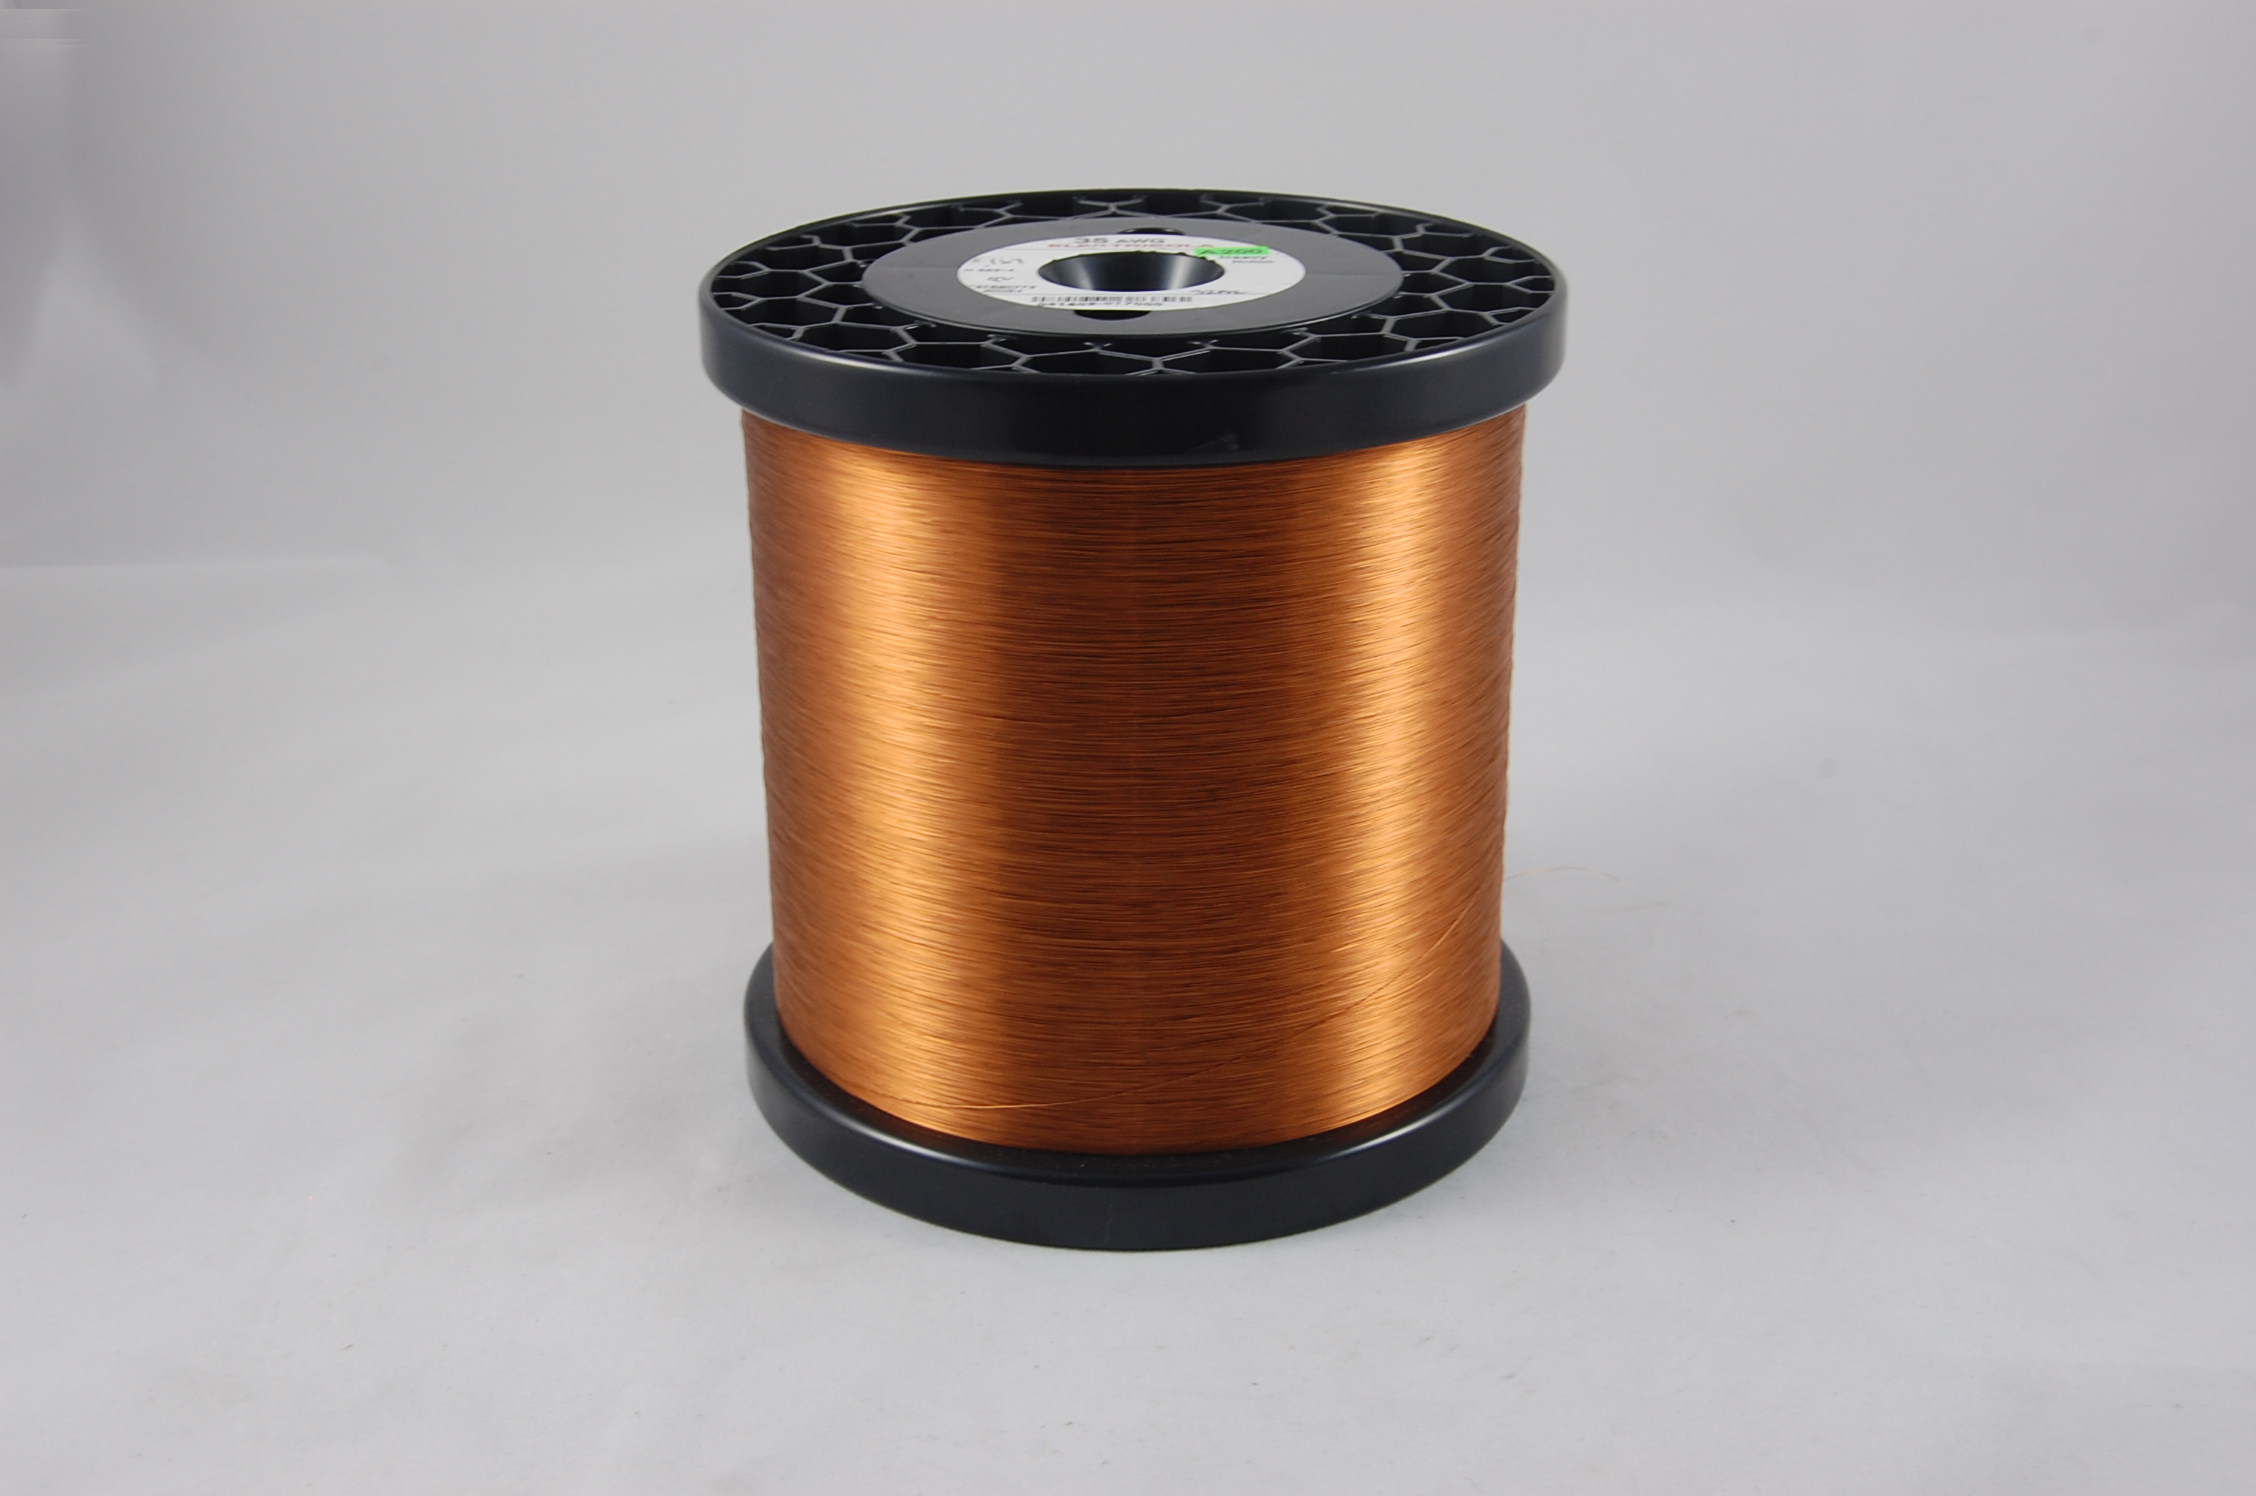 #50 Heavy Amidester 200 Round MW 74 Copper Magnet Wire 200°C, copper,  14 LB 6" x 6" spool (average wght.)